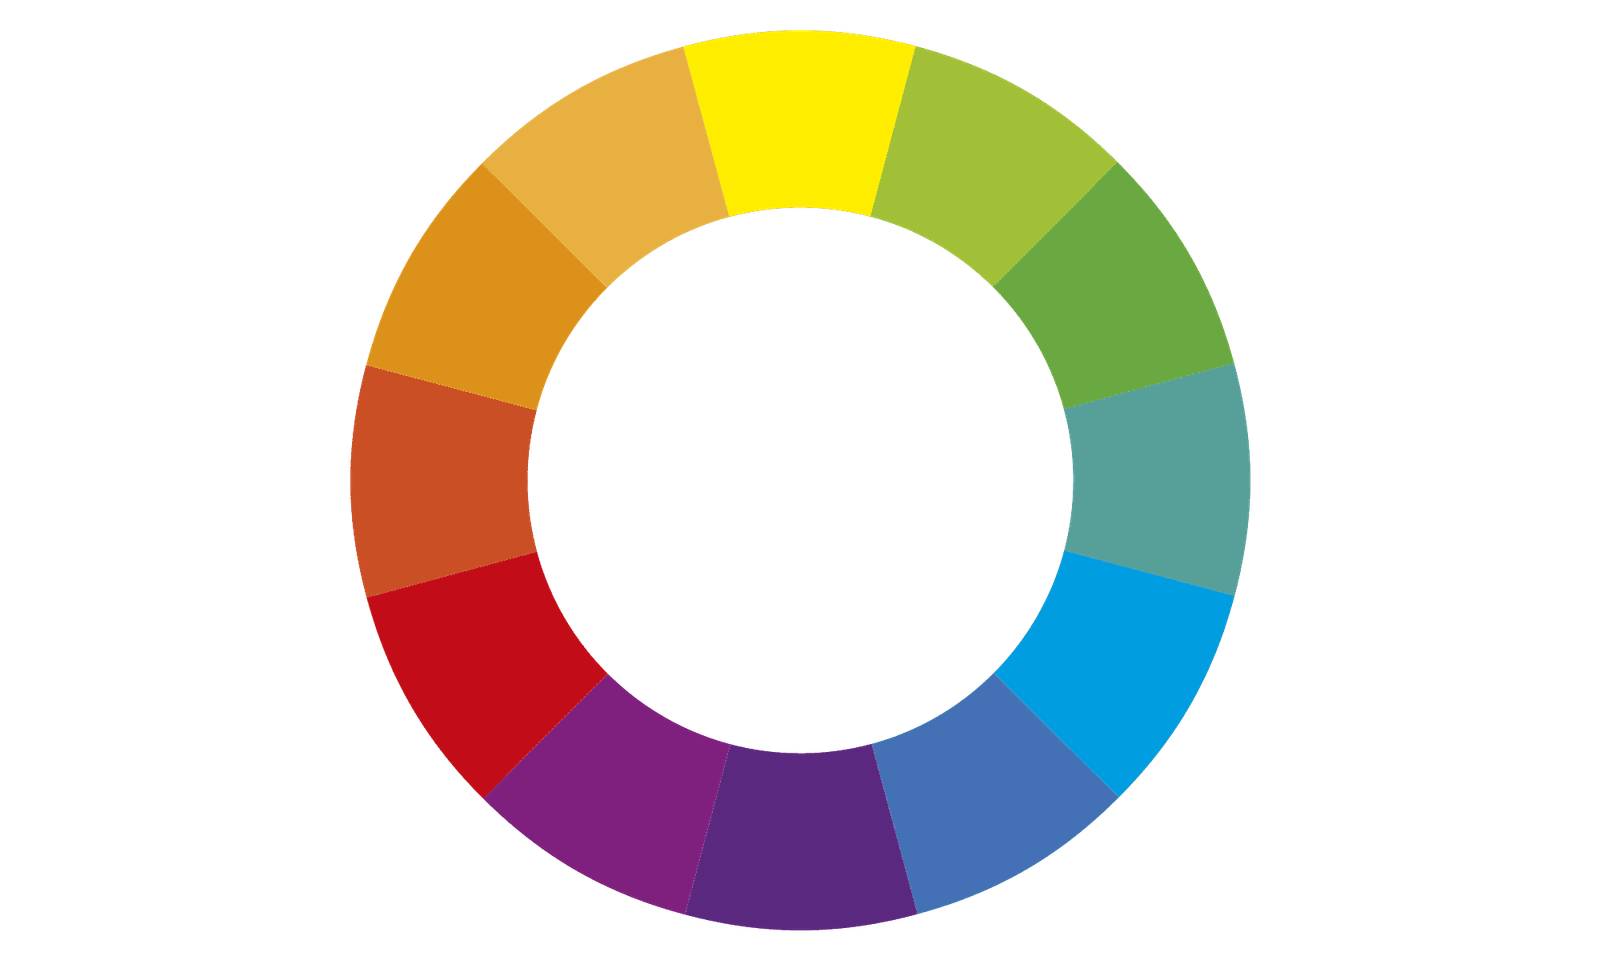 Círculo Cromático simples de doze cores